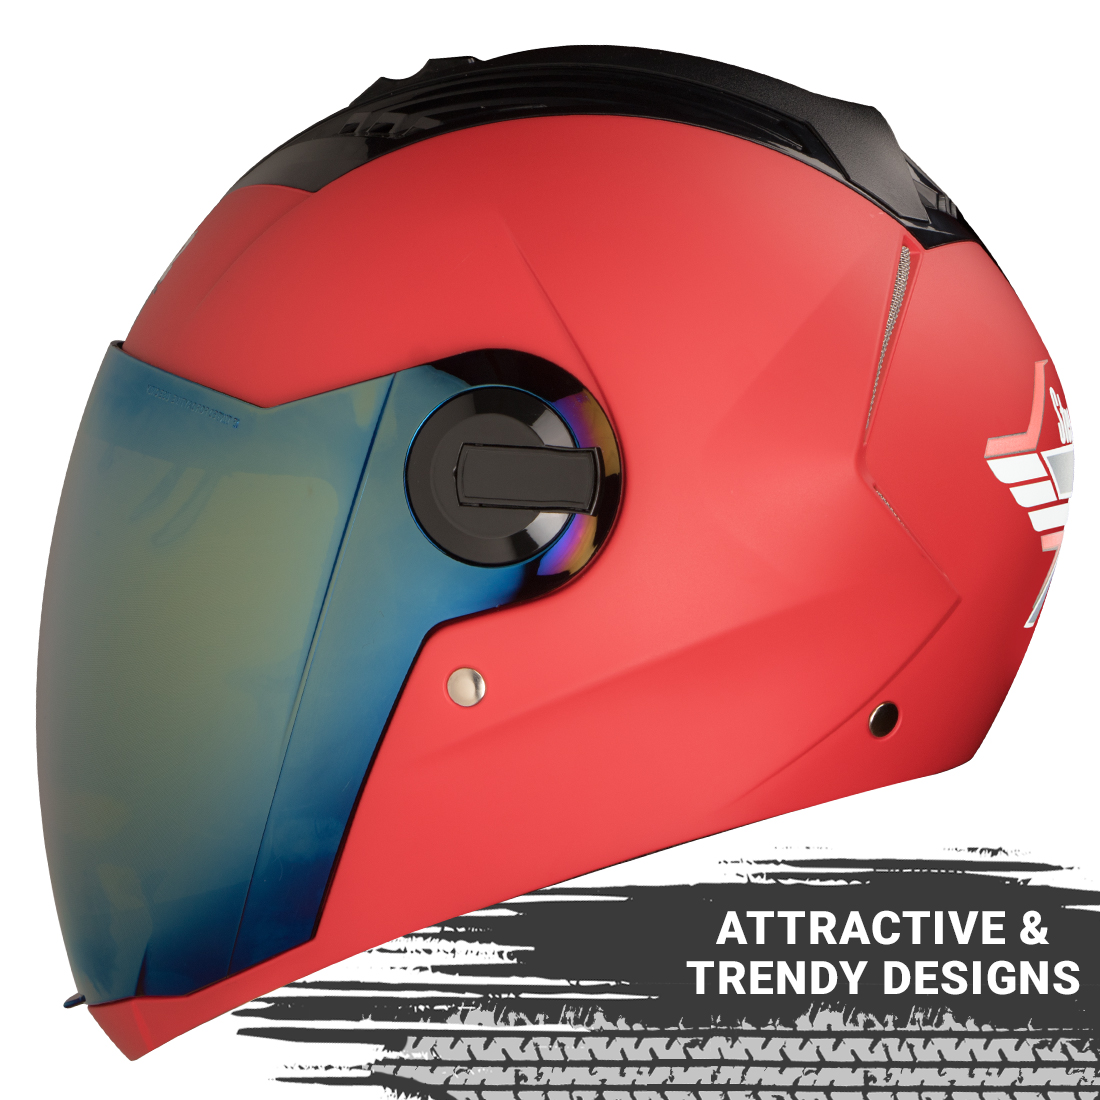 Steelbird SBA-2 7Wings ISI Certified Full Face Helmet (Matt Sports Red With Chrome Gold Visor)